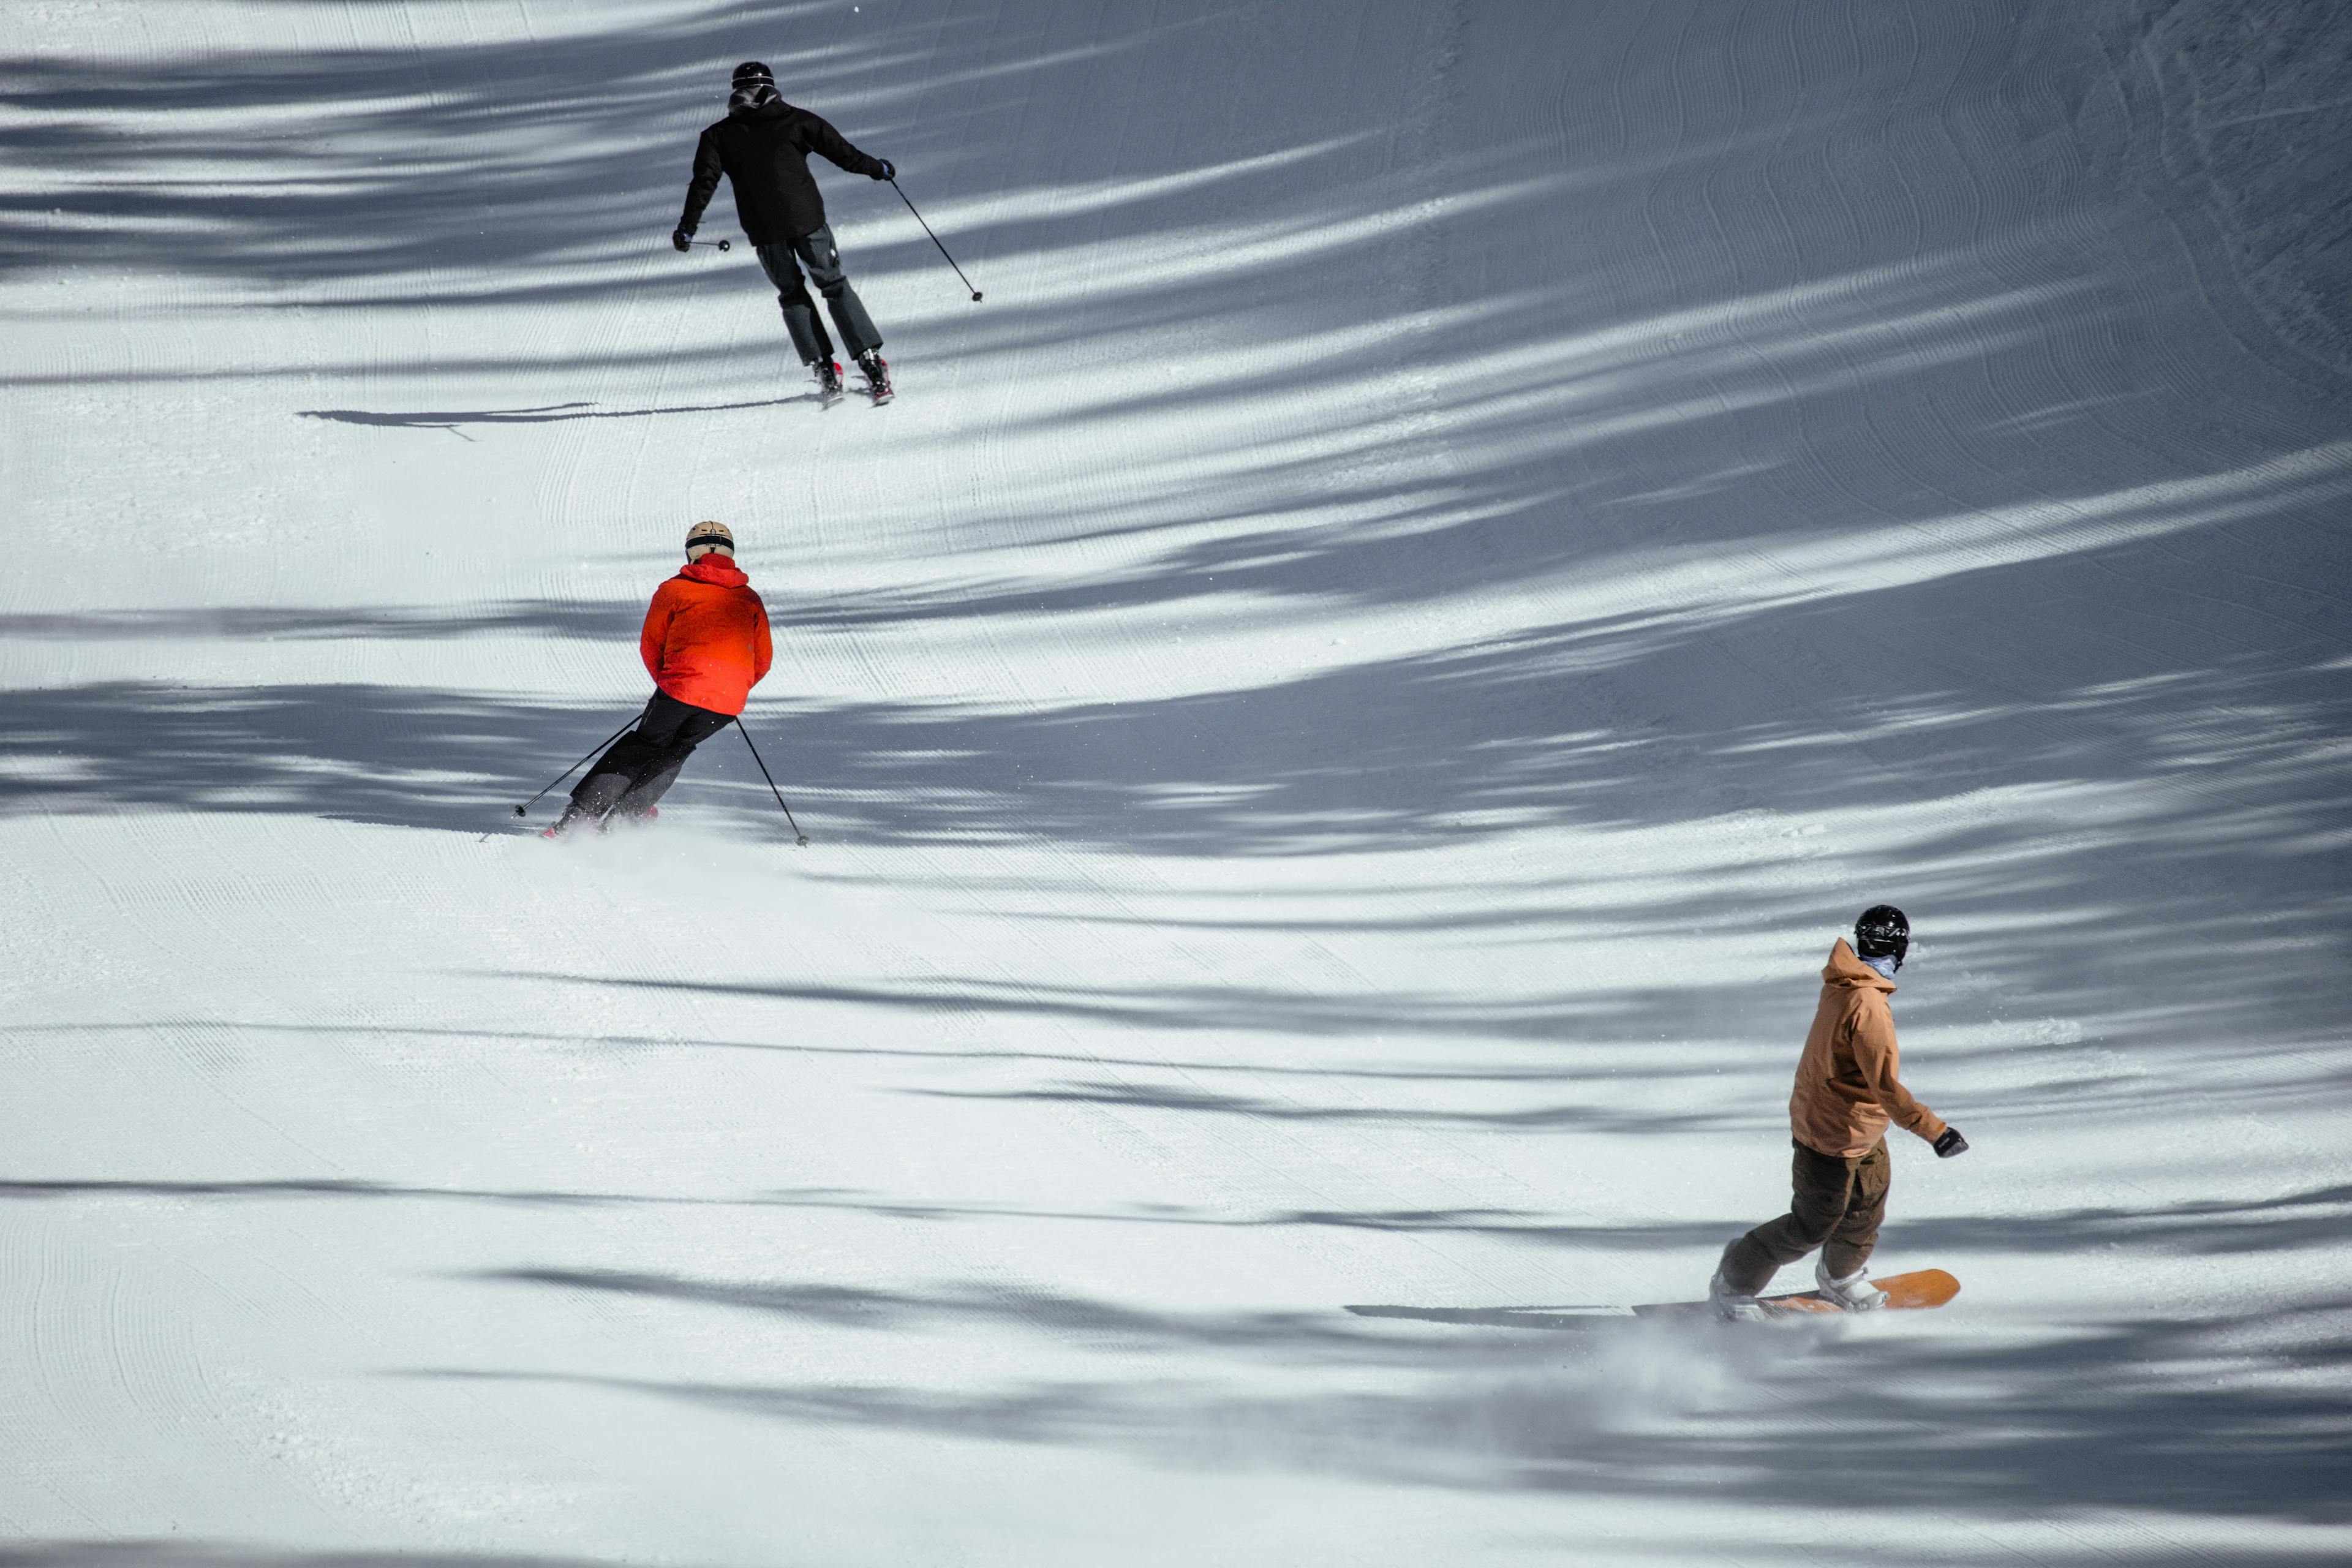 skiers and snowboarder enjoying ski slope